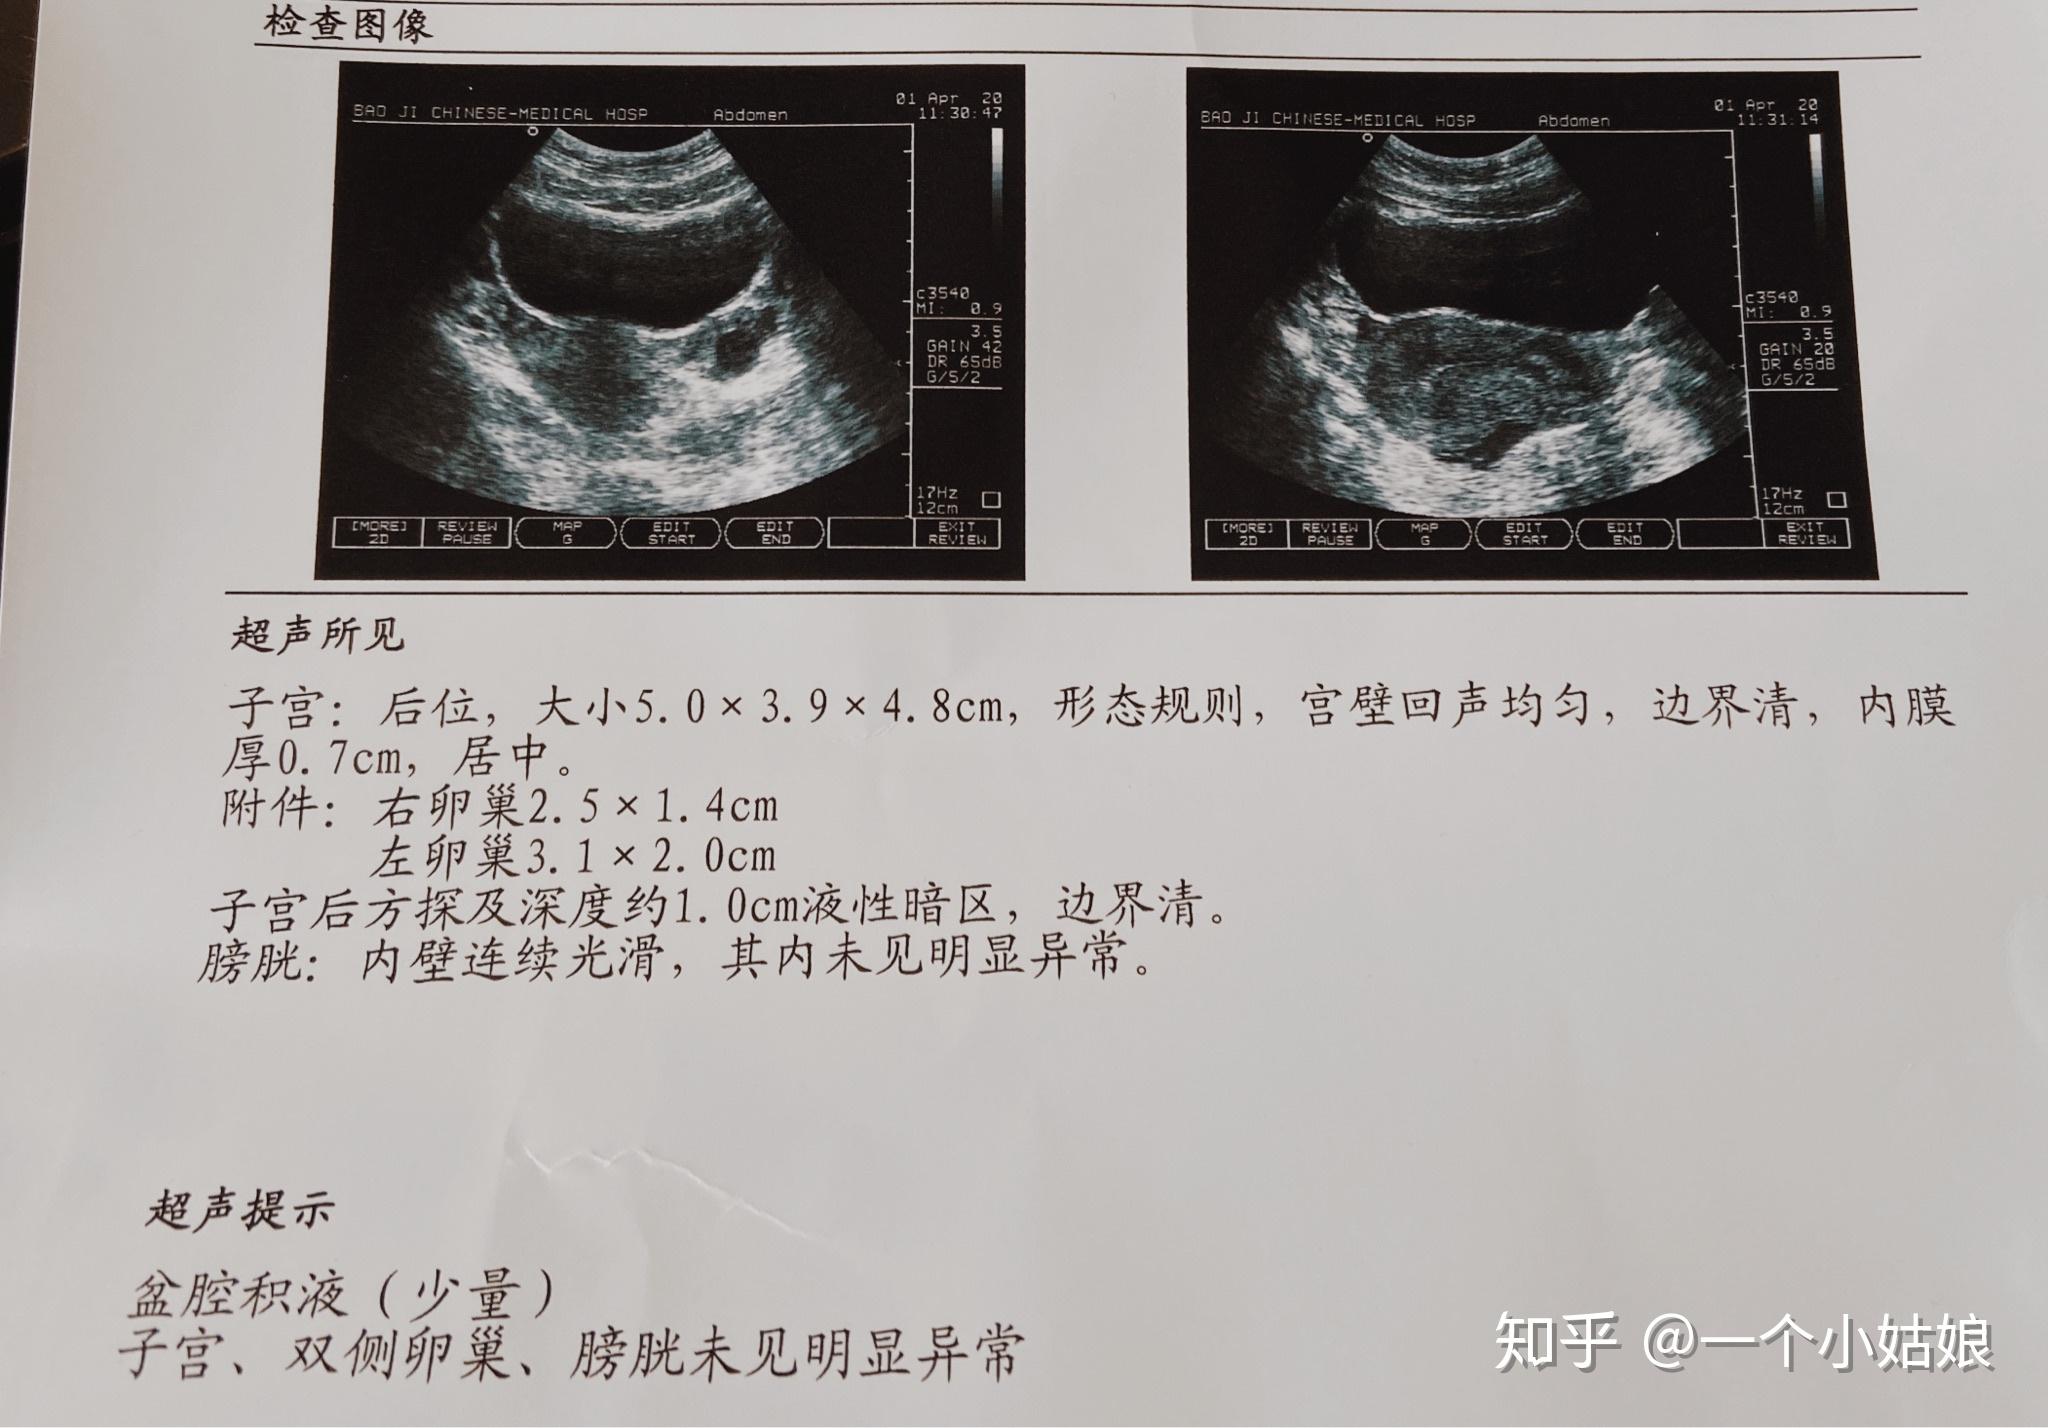 黄陂区中医医院实施多科联动诊疗模式 成功完成一例子宫动脉栓塞术应用瘢痕妊娠治疗